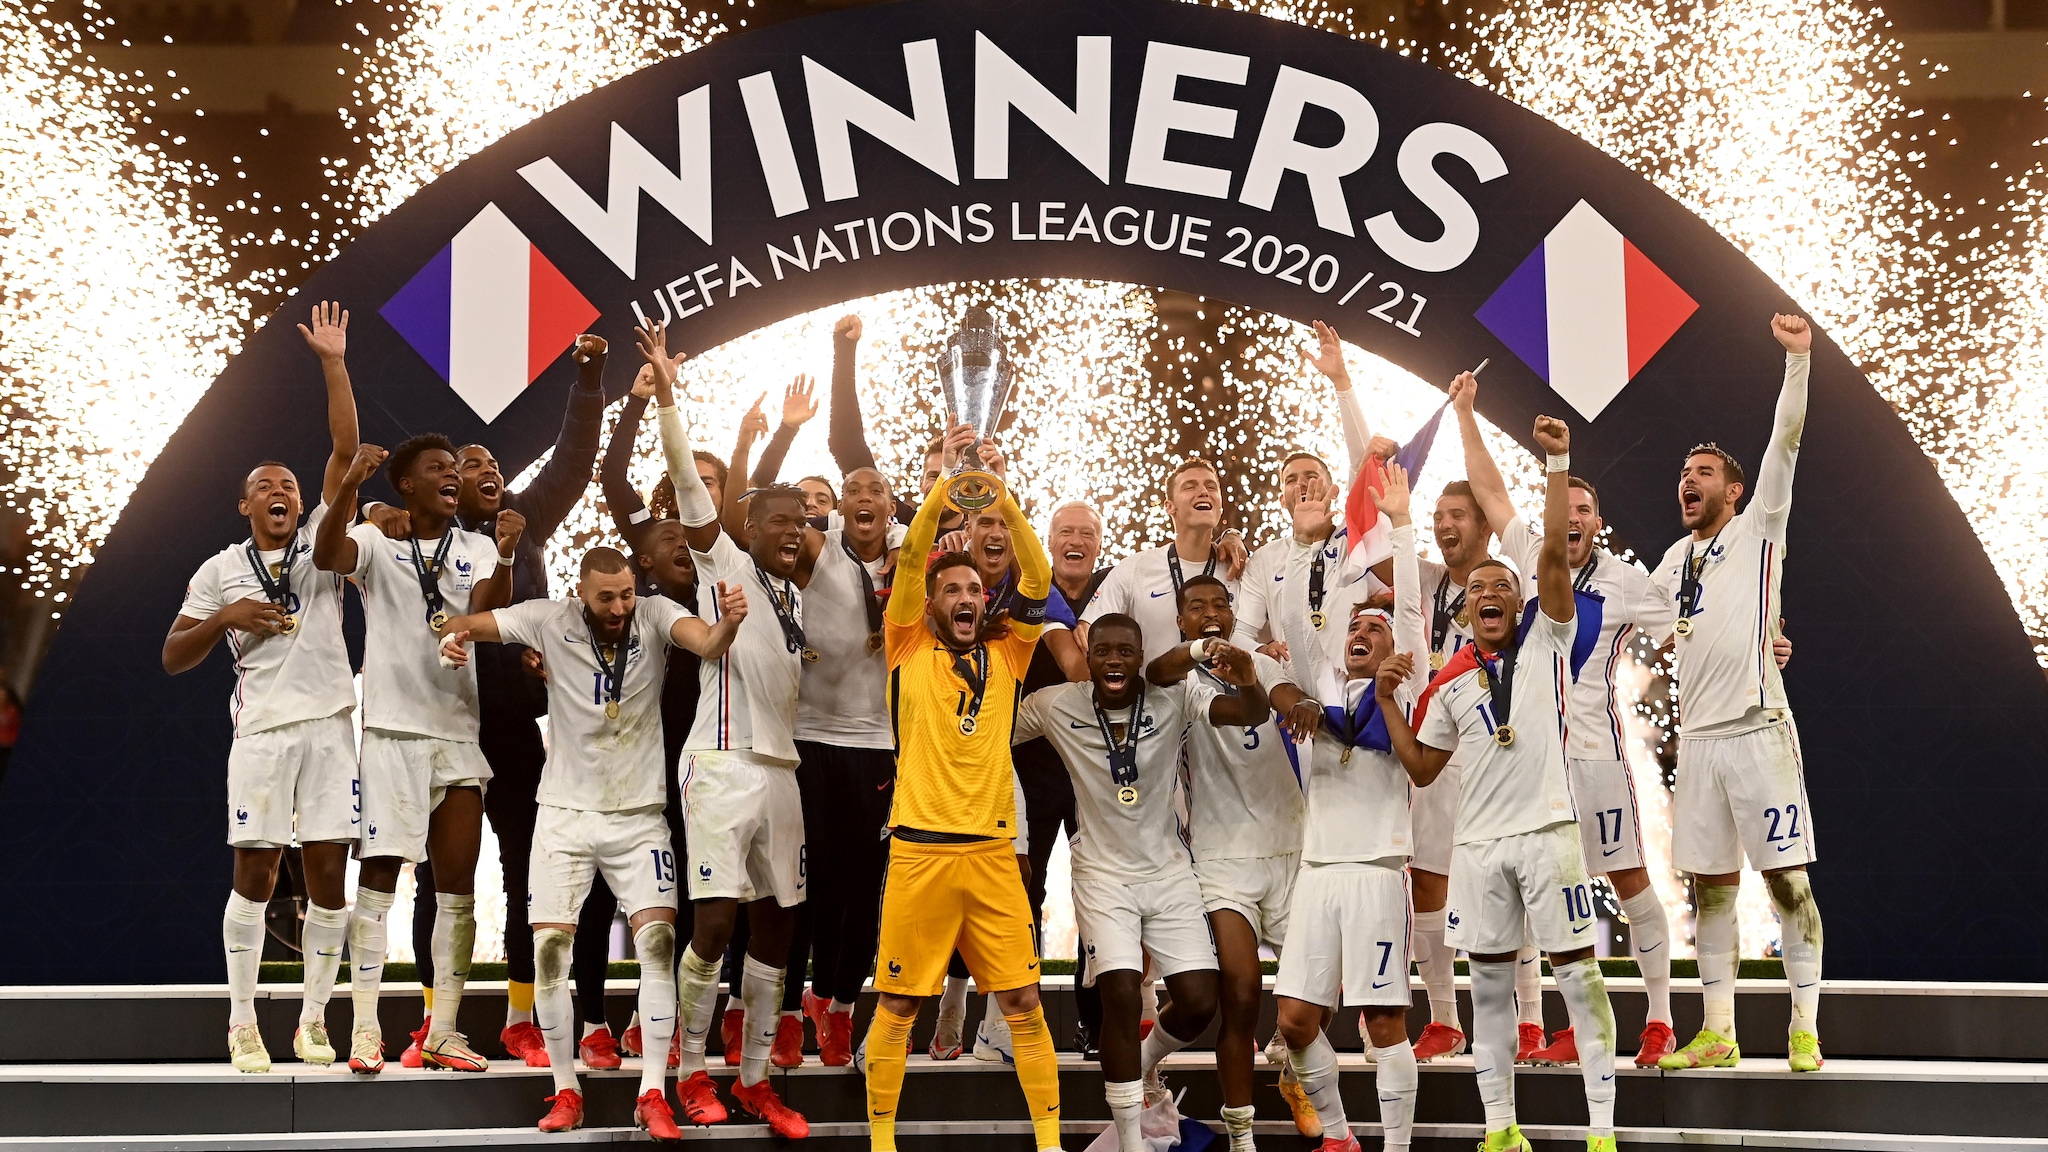 ¿Qué gana el que gane la UEFA Nations League